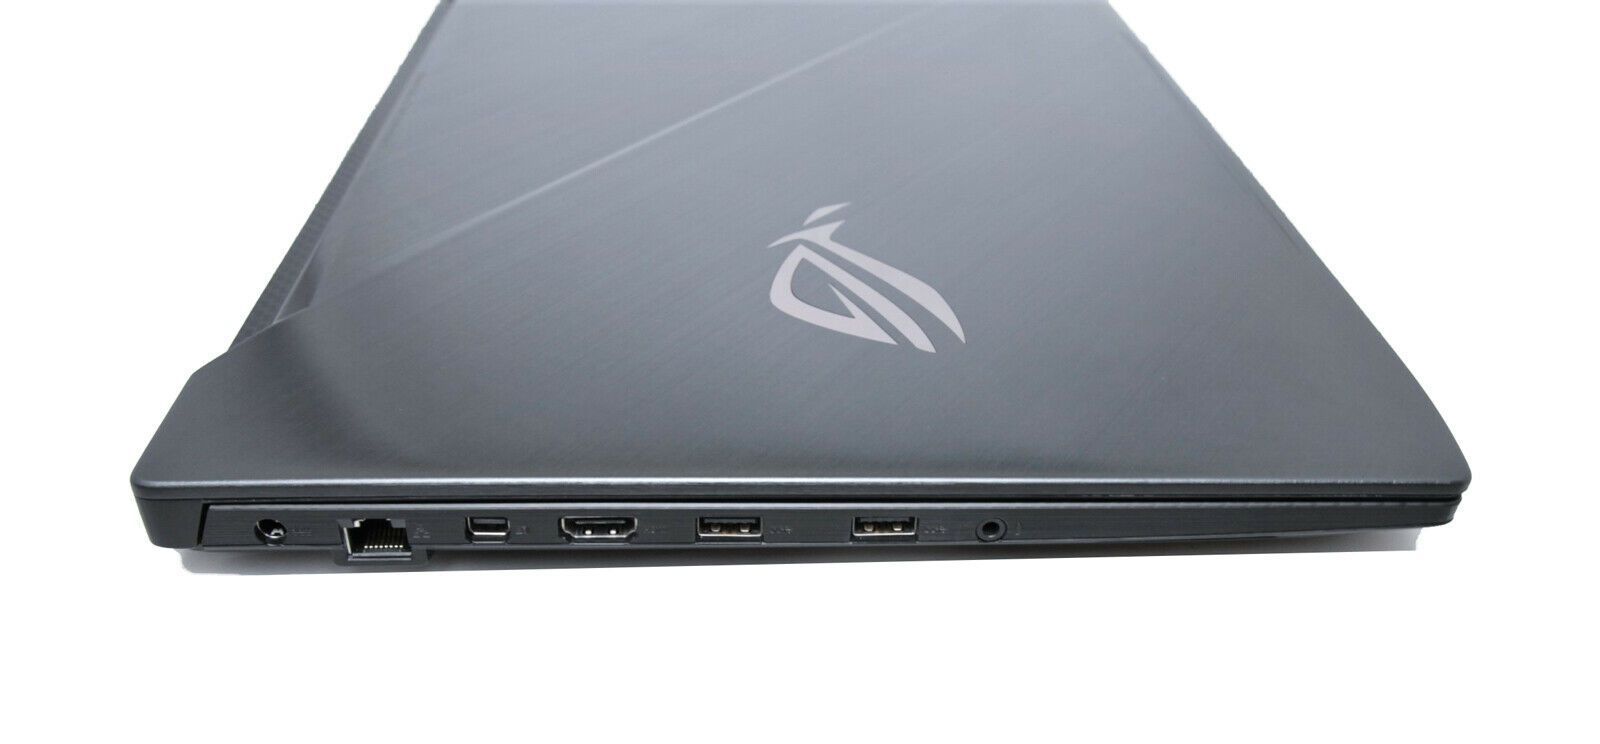 ASUS GL703VM 17" Gaming Laptop NVIDIA GTX 1060 Core i7-7700HQ 16GB RAM 256GB+1TB - CruiseTech